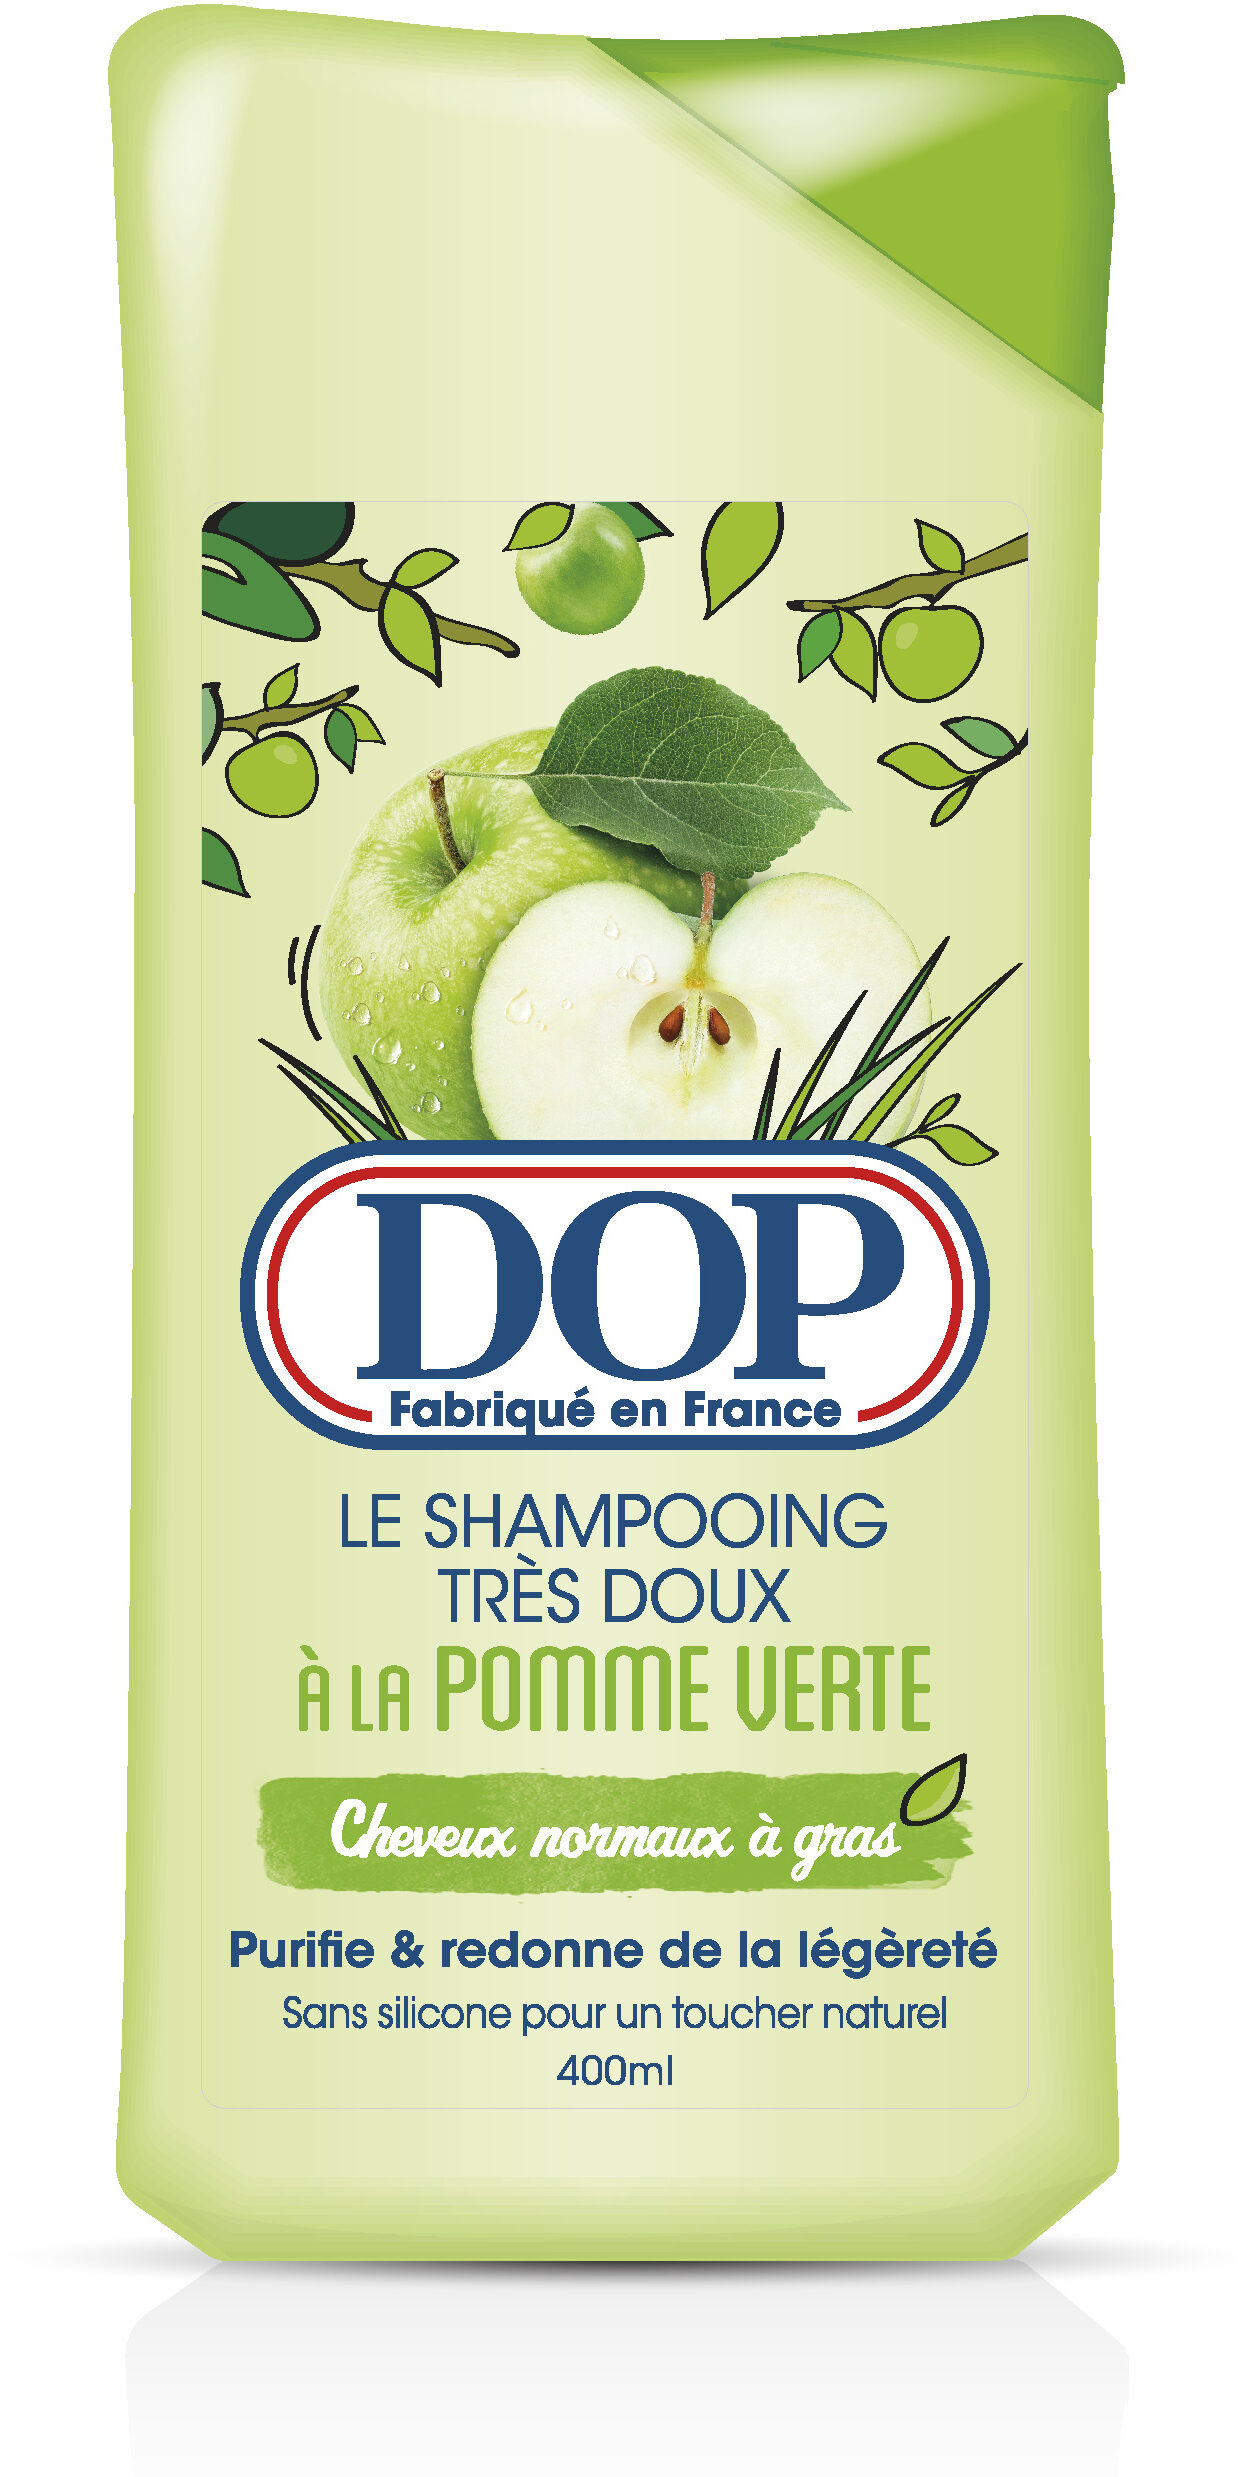 Shampoing très doux à la pomme verte - Produit - fr